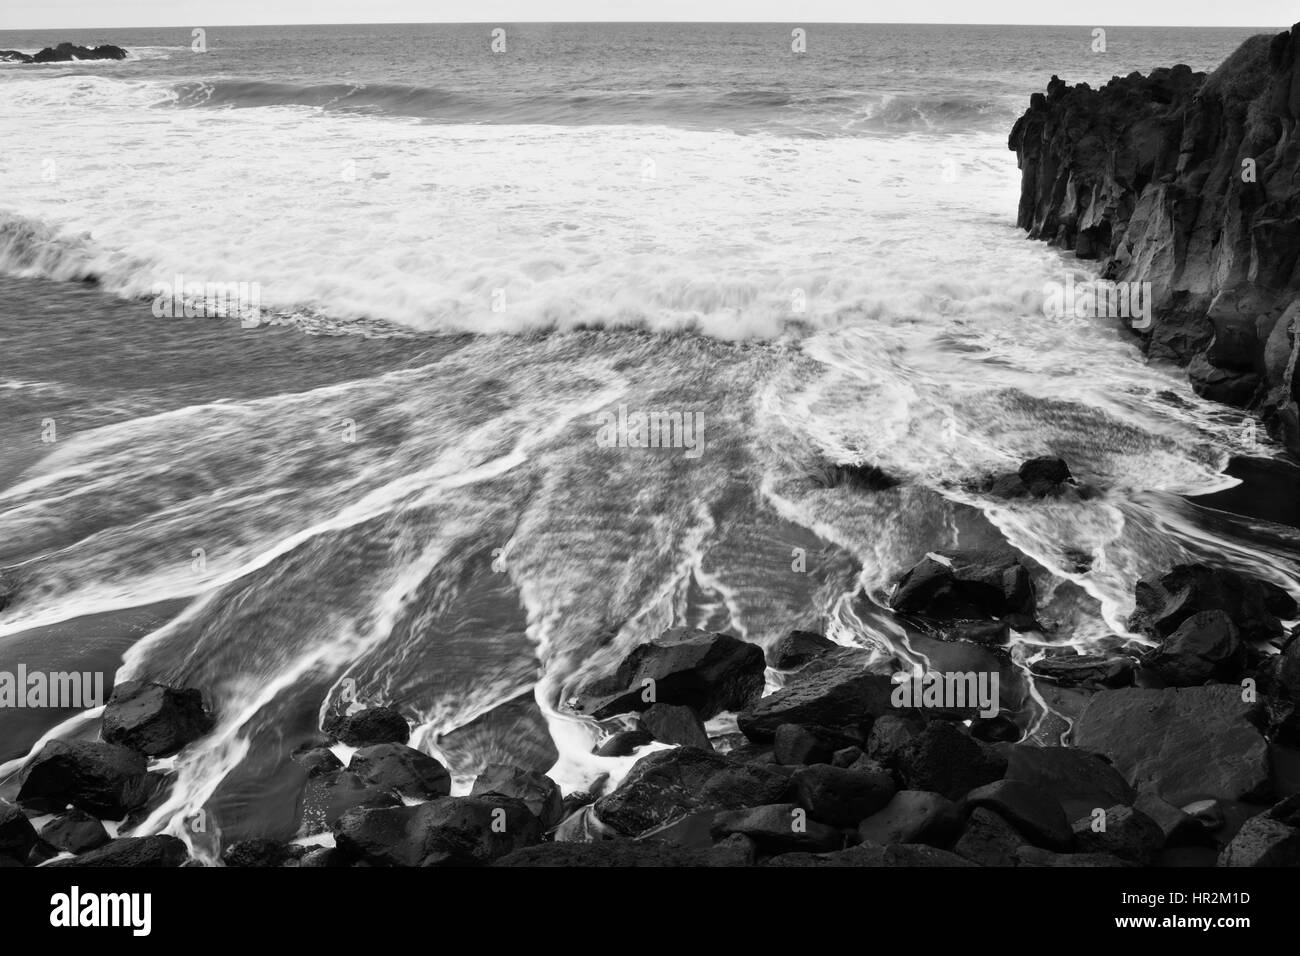 Schwarze Felsen Vulkan-Strand und Schaum aus einer Welle, schwarz / weiß Bild von Teneriffa. Stockfoto